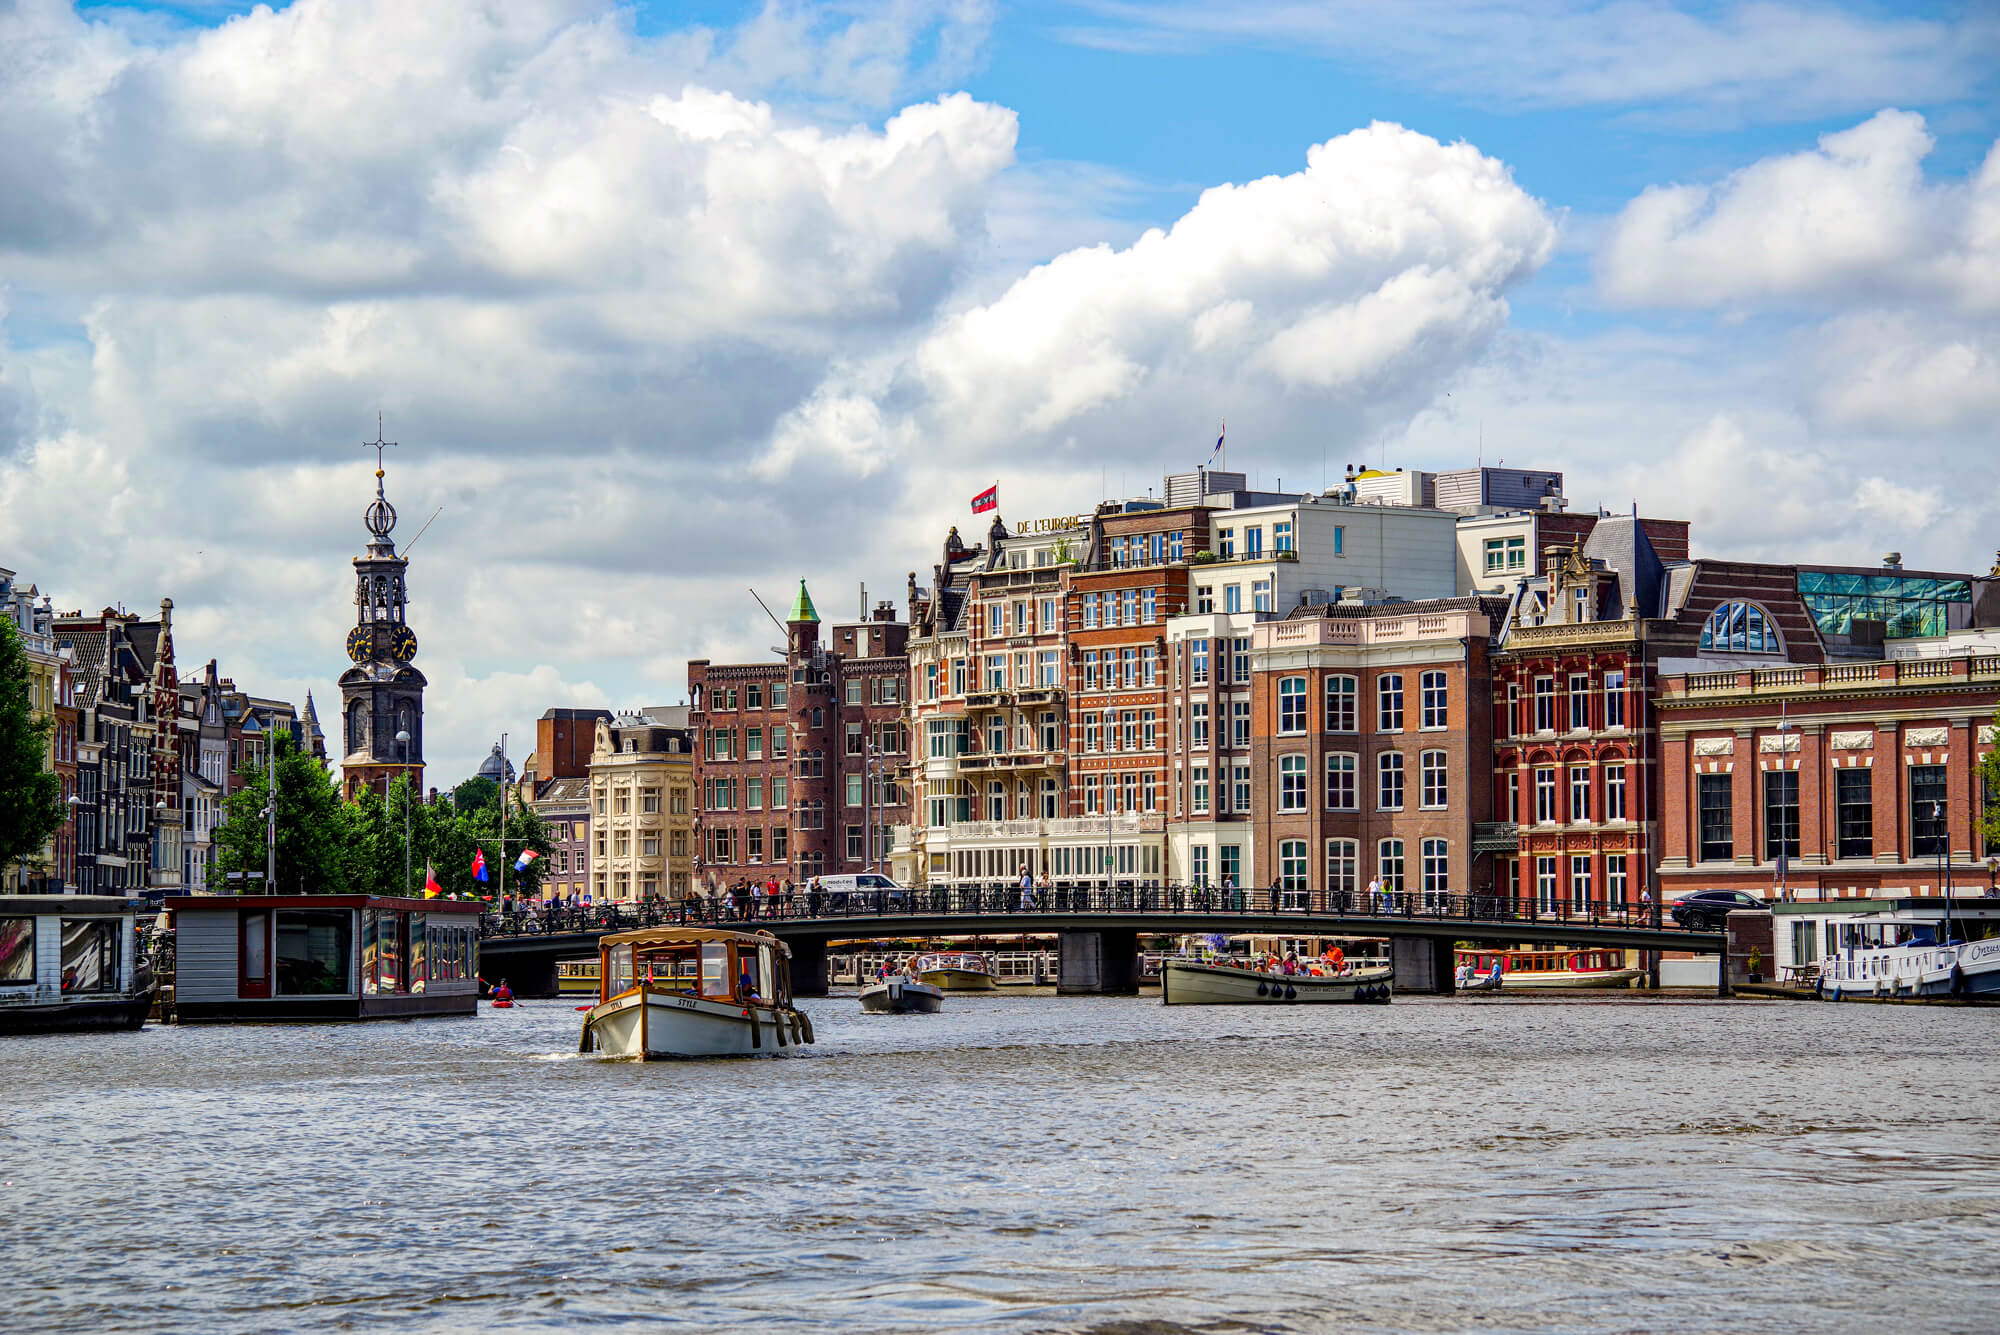 Die Amstel fliesst durch die Halvemaansbrug - die zu den bekanntesten Brücken in Amsterdam gehört. Im Hintergrund sieht man typische Häuser von Kaufmannsfamilien und das bekannte Münztor.